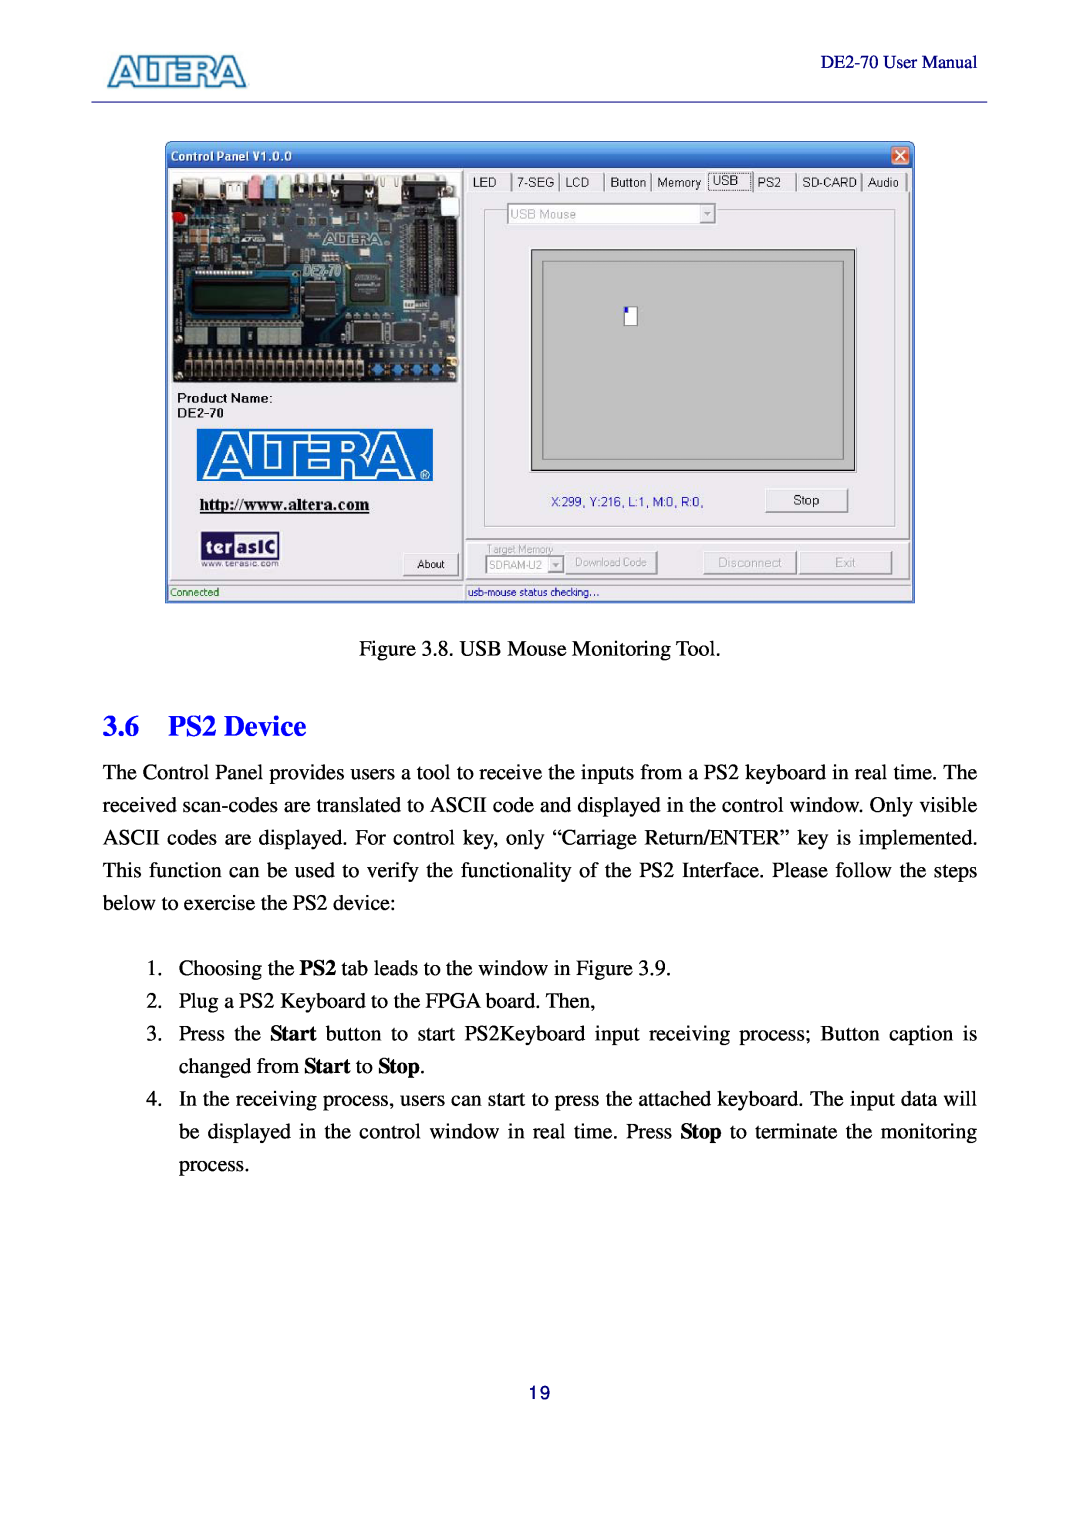 Sigma DE2-70 manual 3.6 PS2 Device 